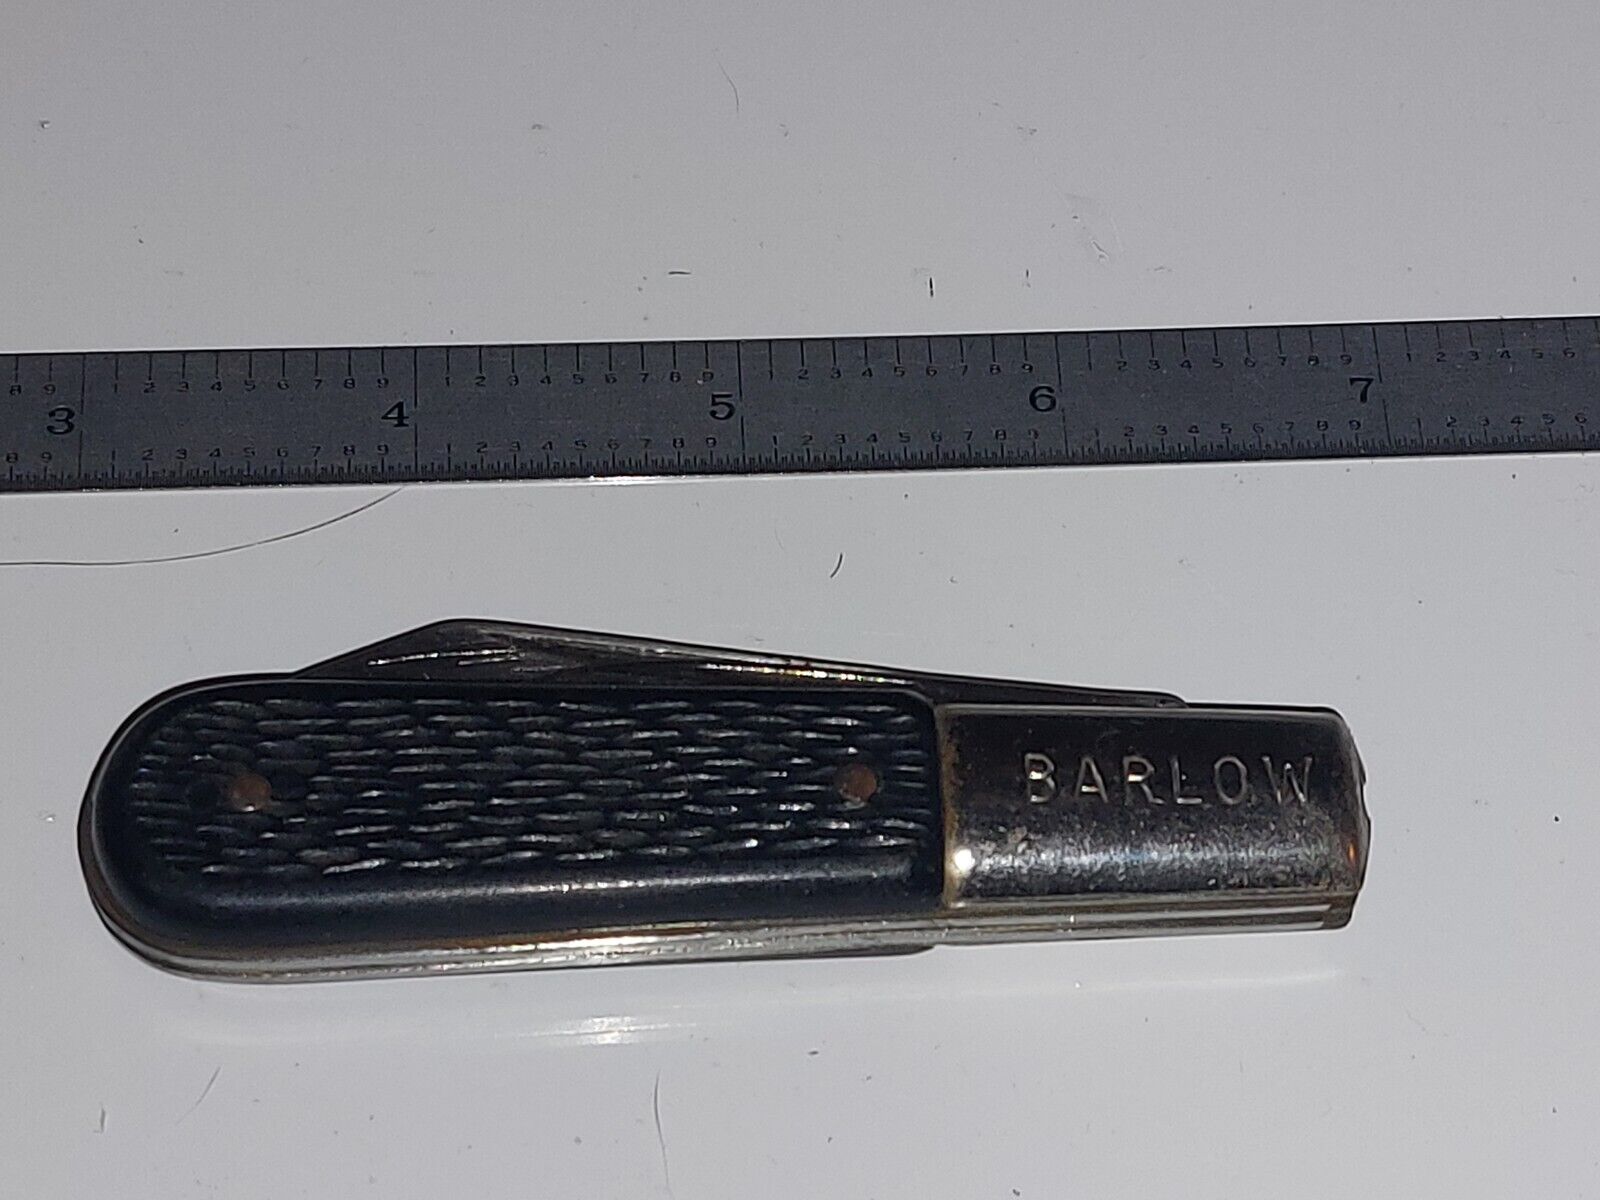 Vintage Barlow “The Ideal” Pocket Knife 2 Blades